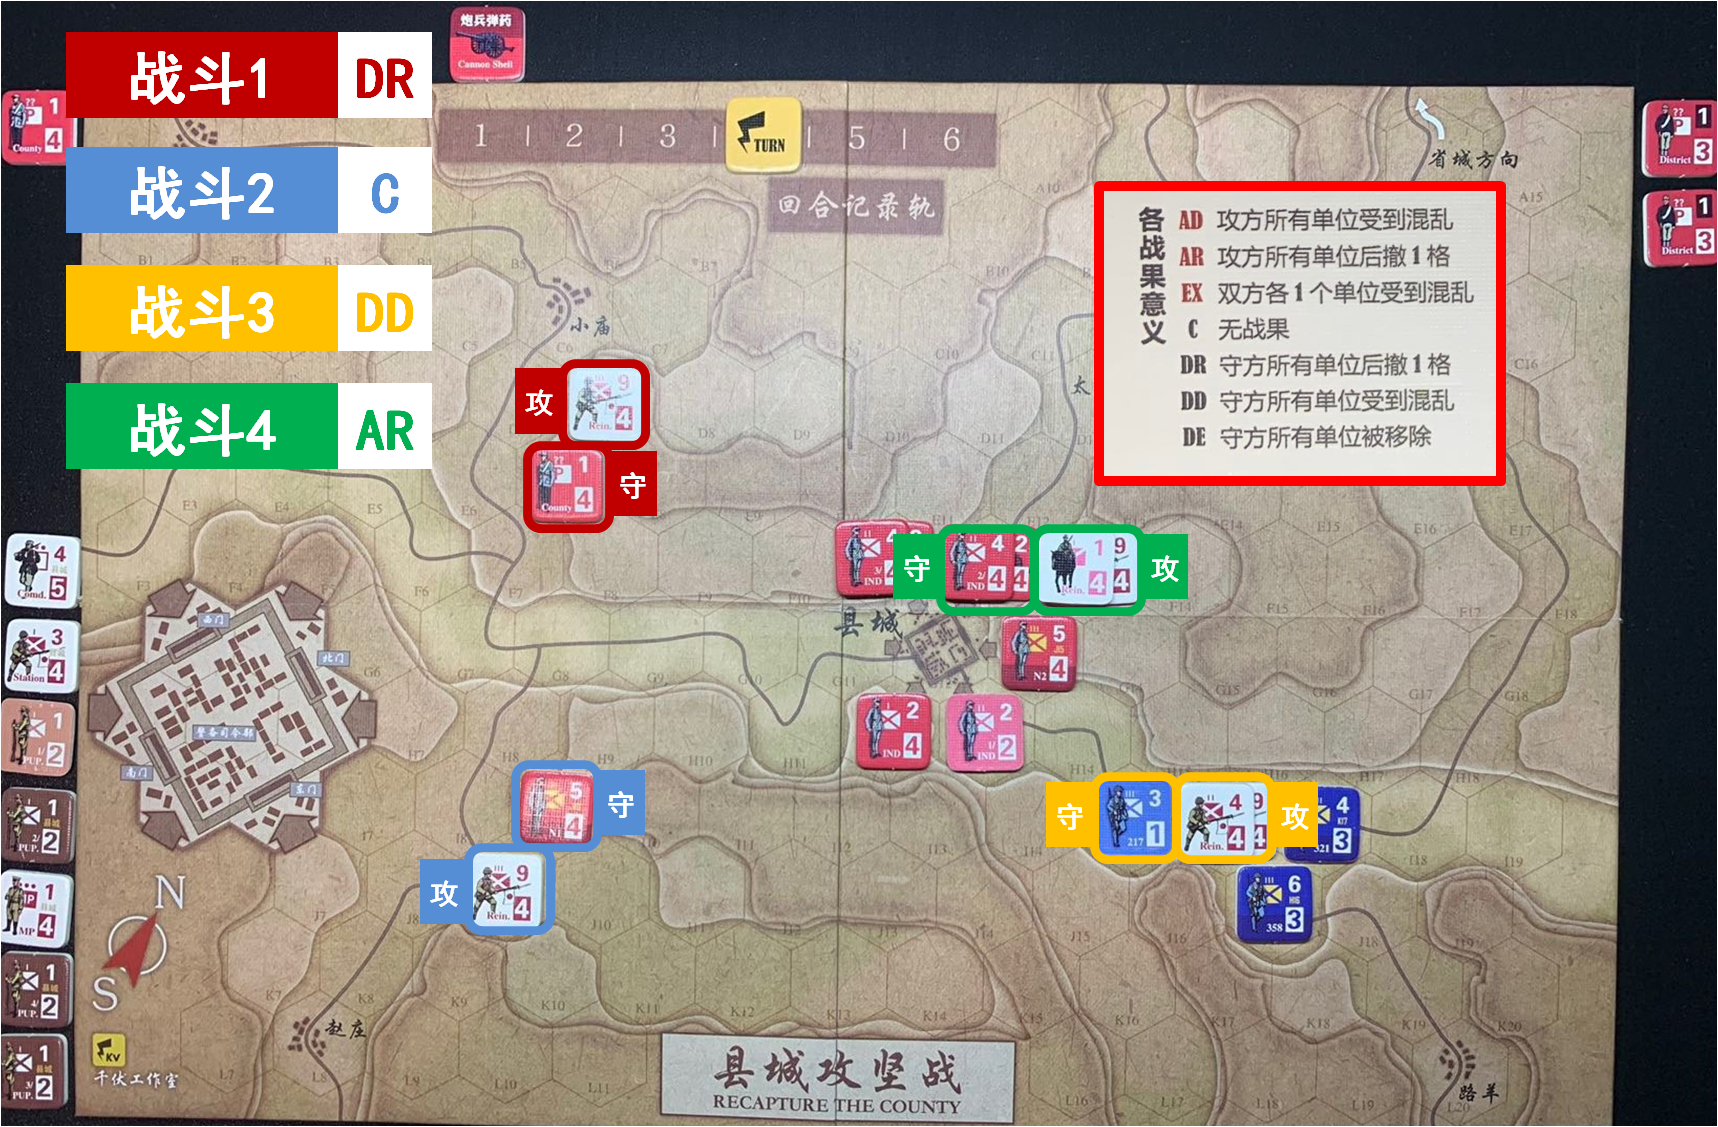 第四回合 日方戰鬥階段 戰鬥結果